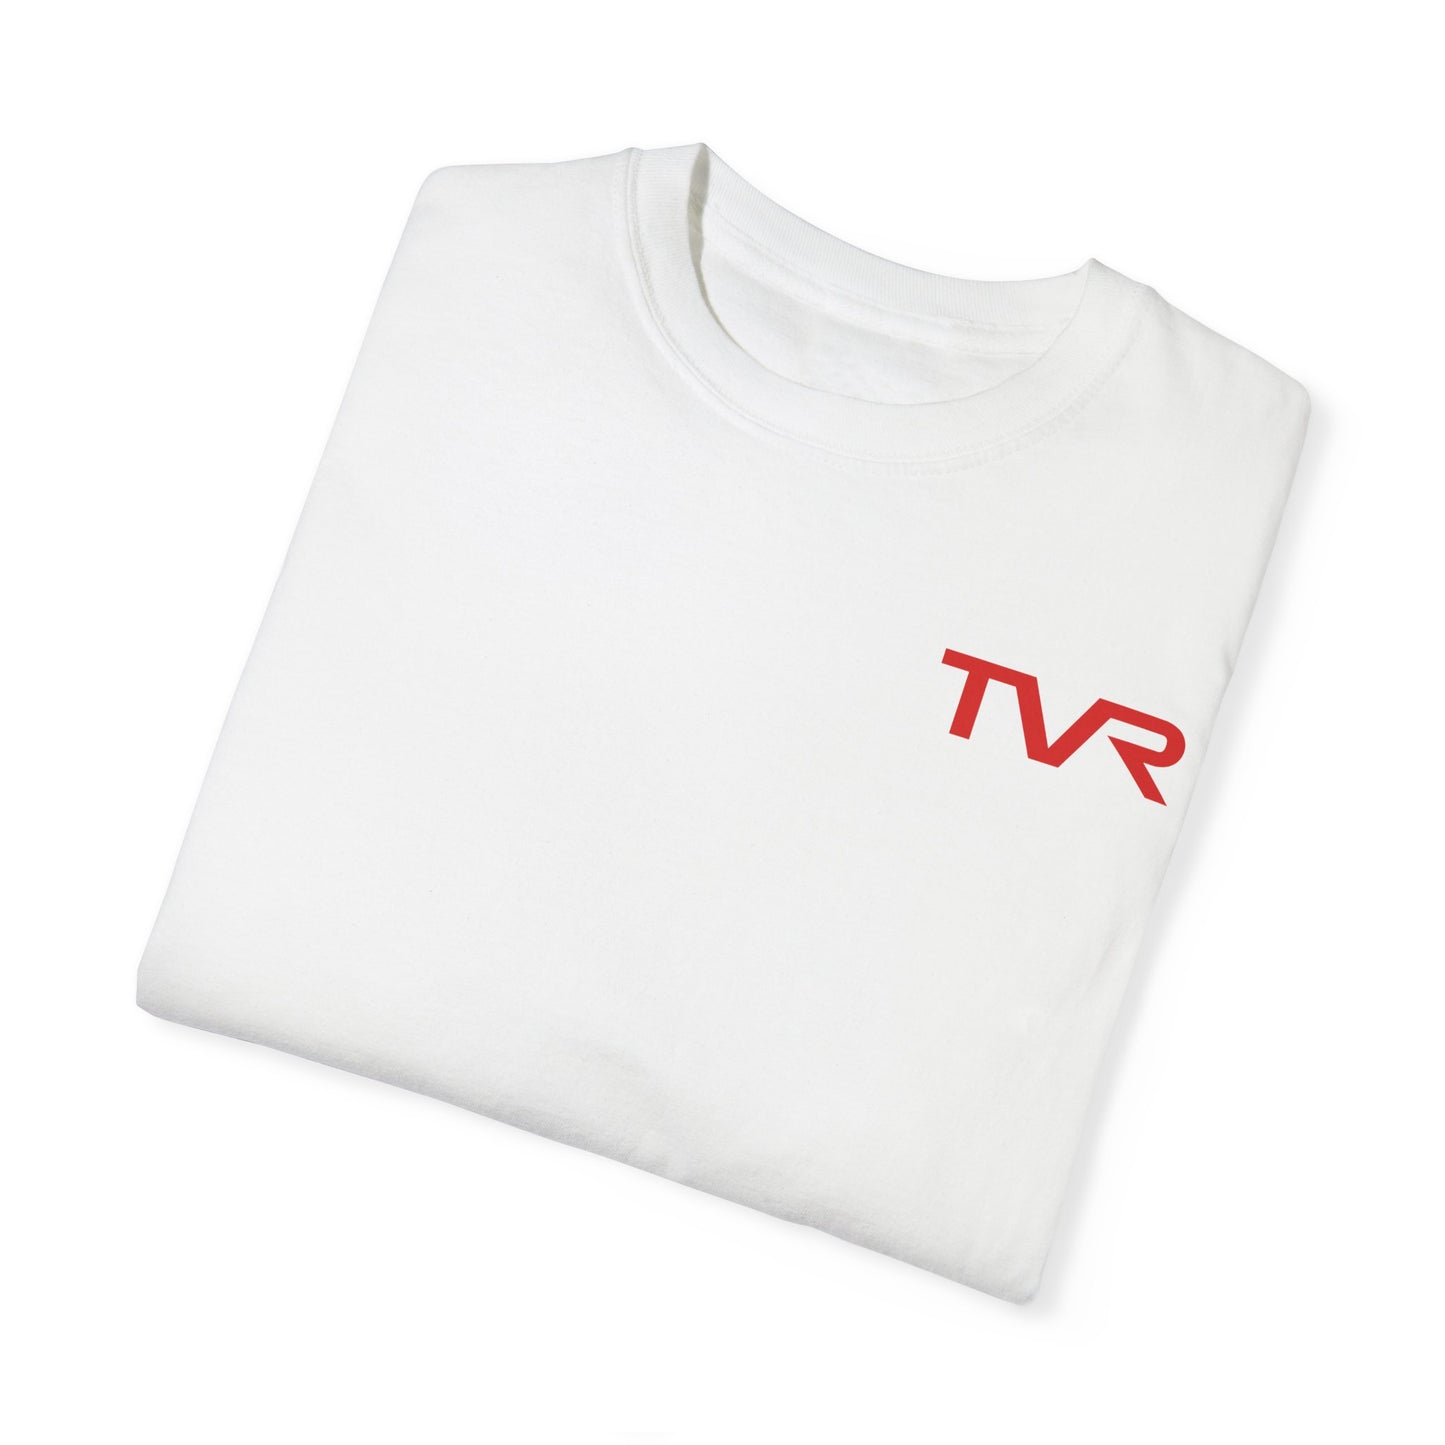 TVR Garage T-shirt